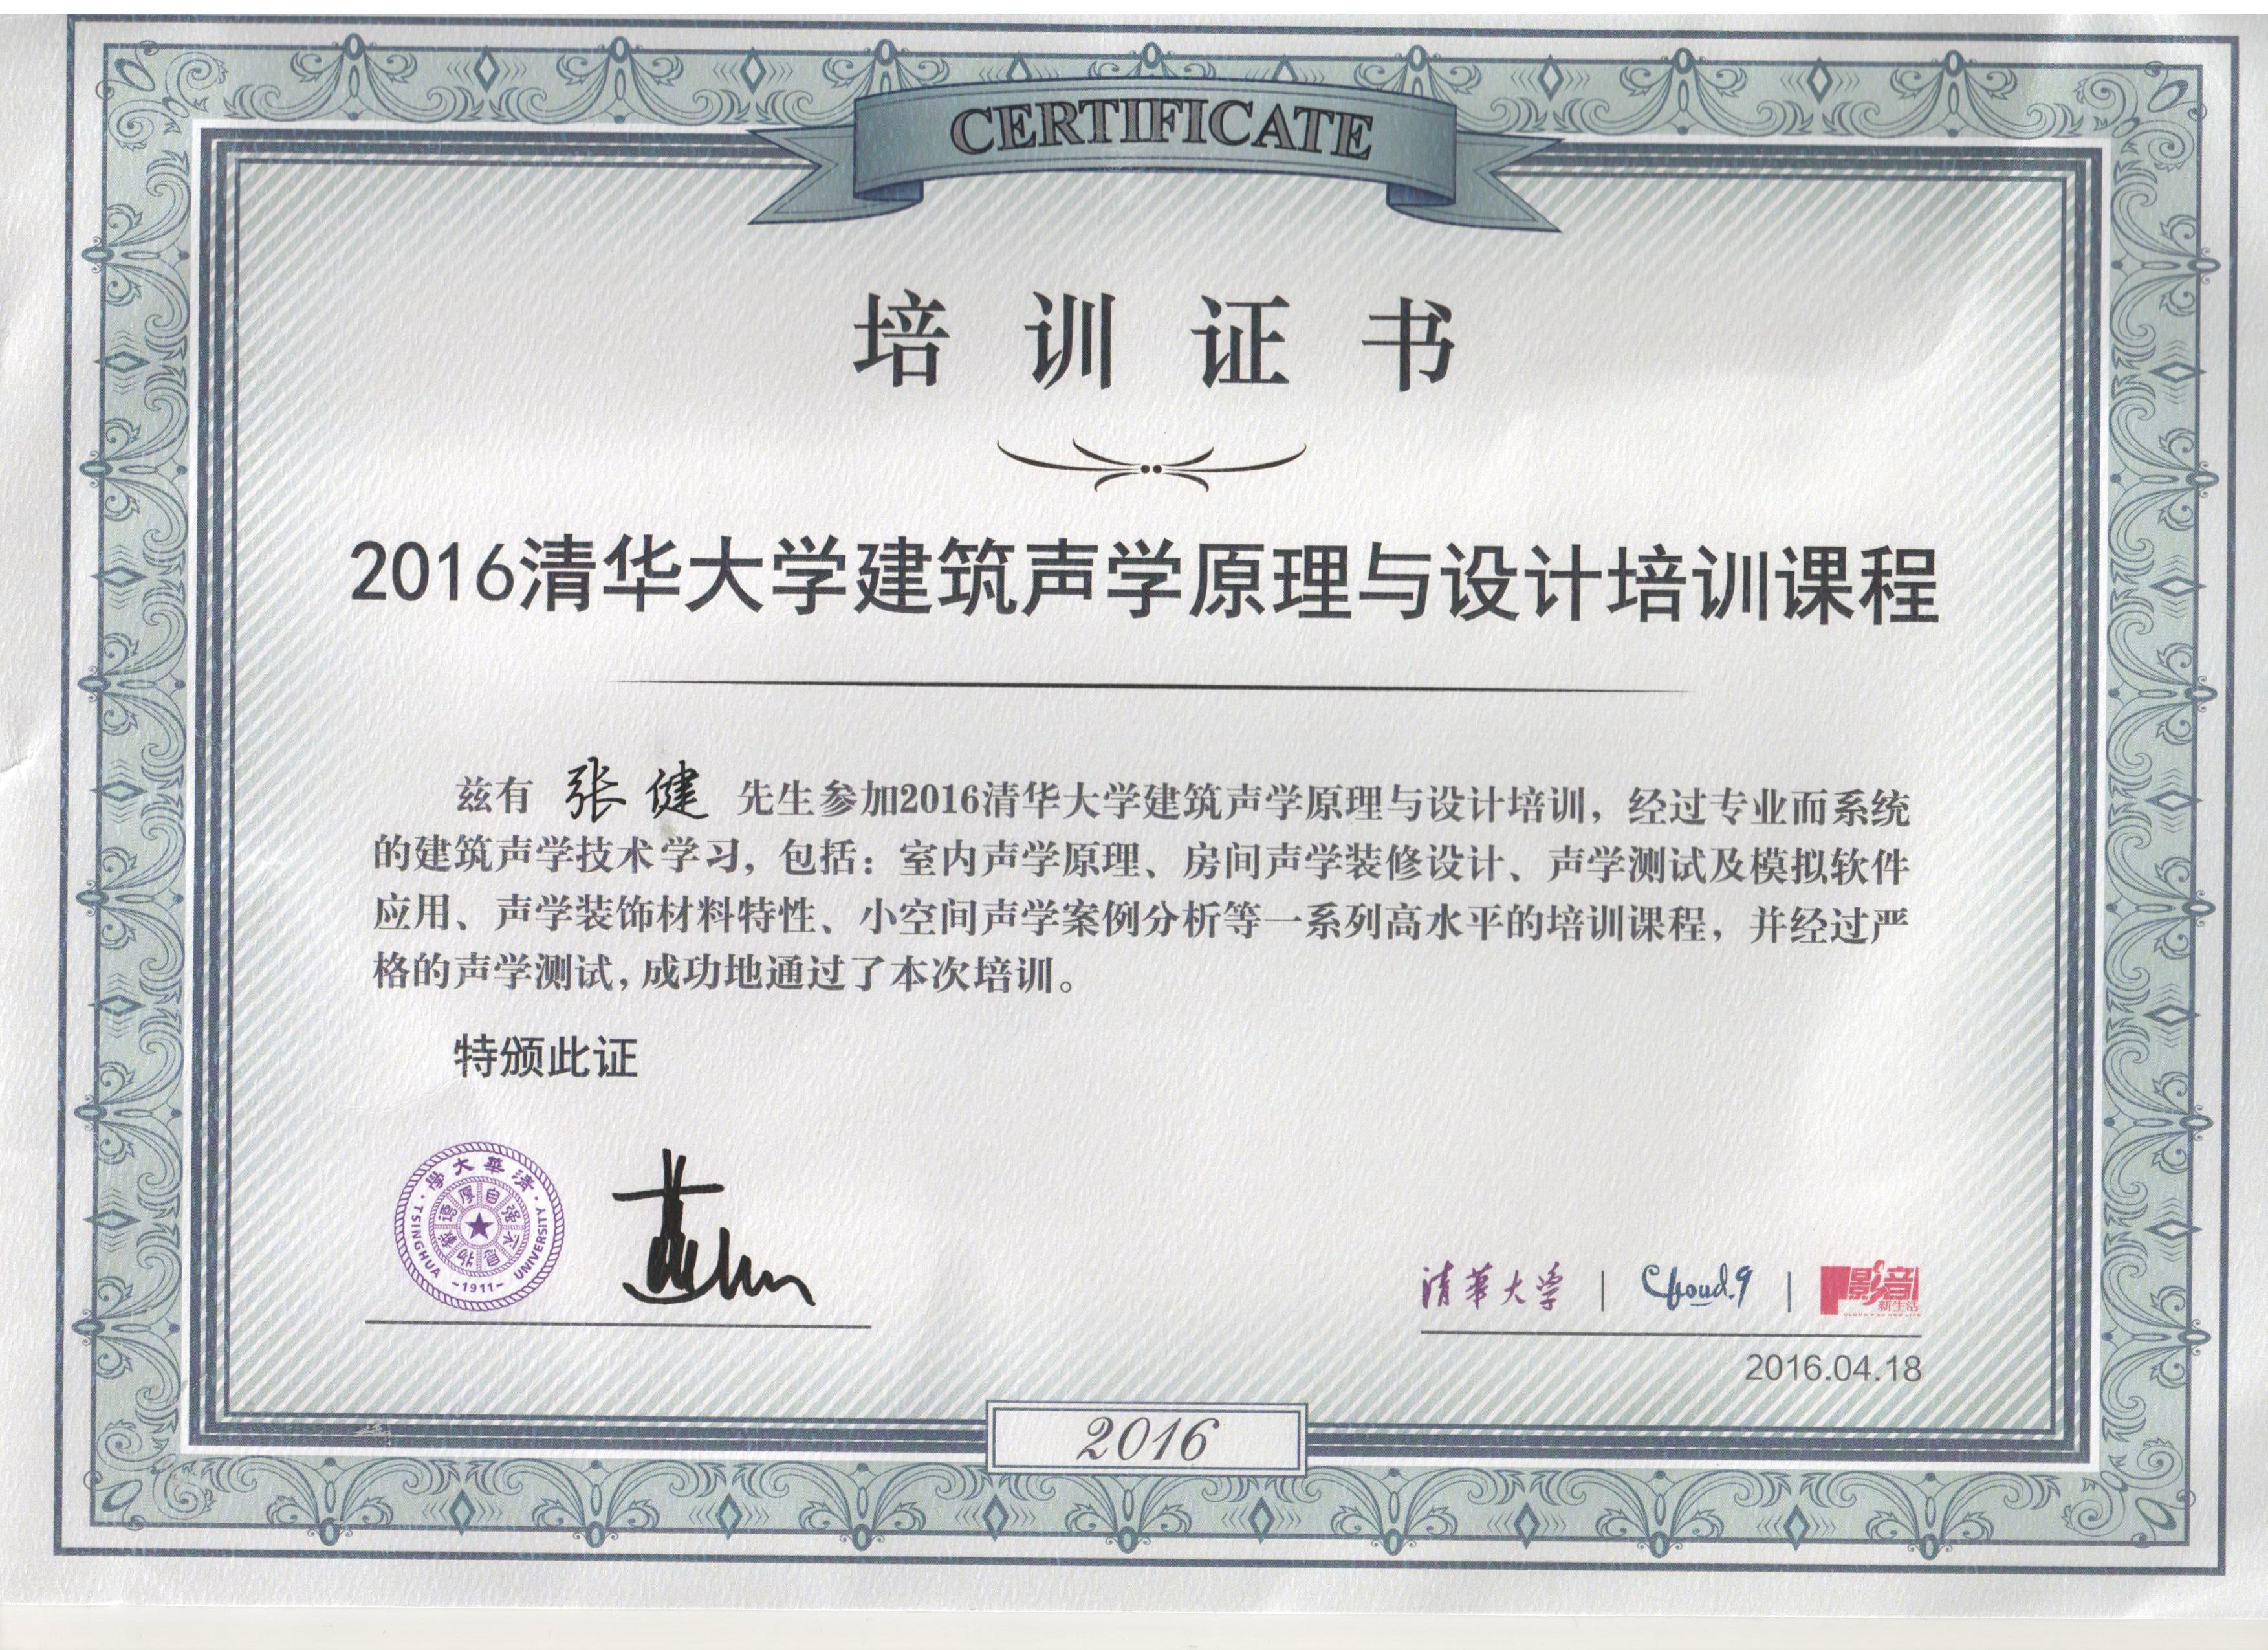 2016张健获得“清华大学建筑声学原理与设计培训课程”毕业证书